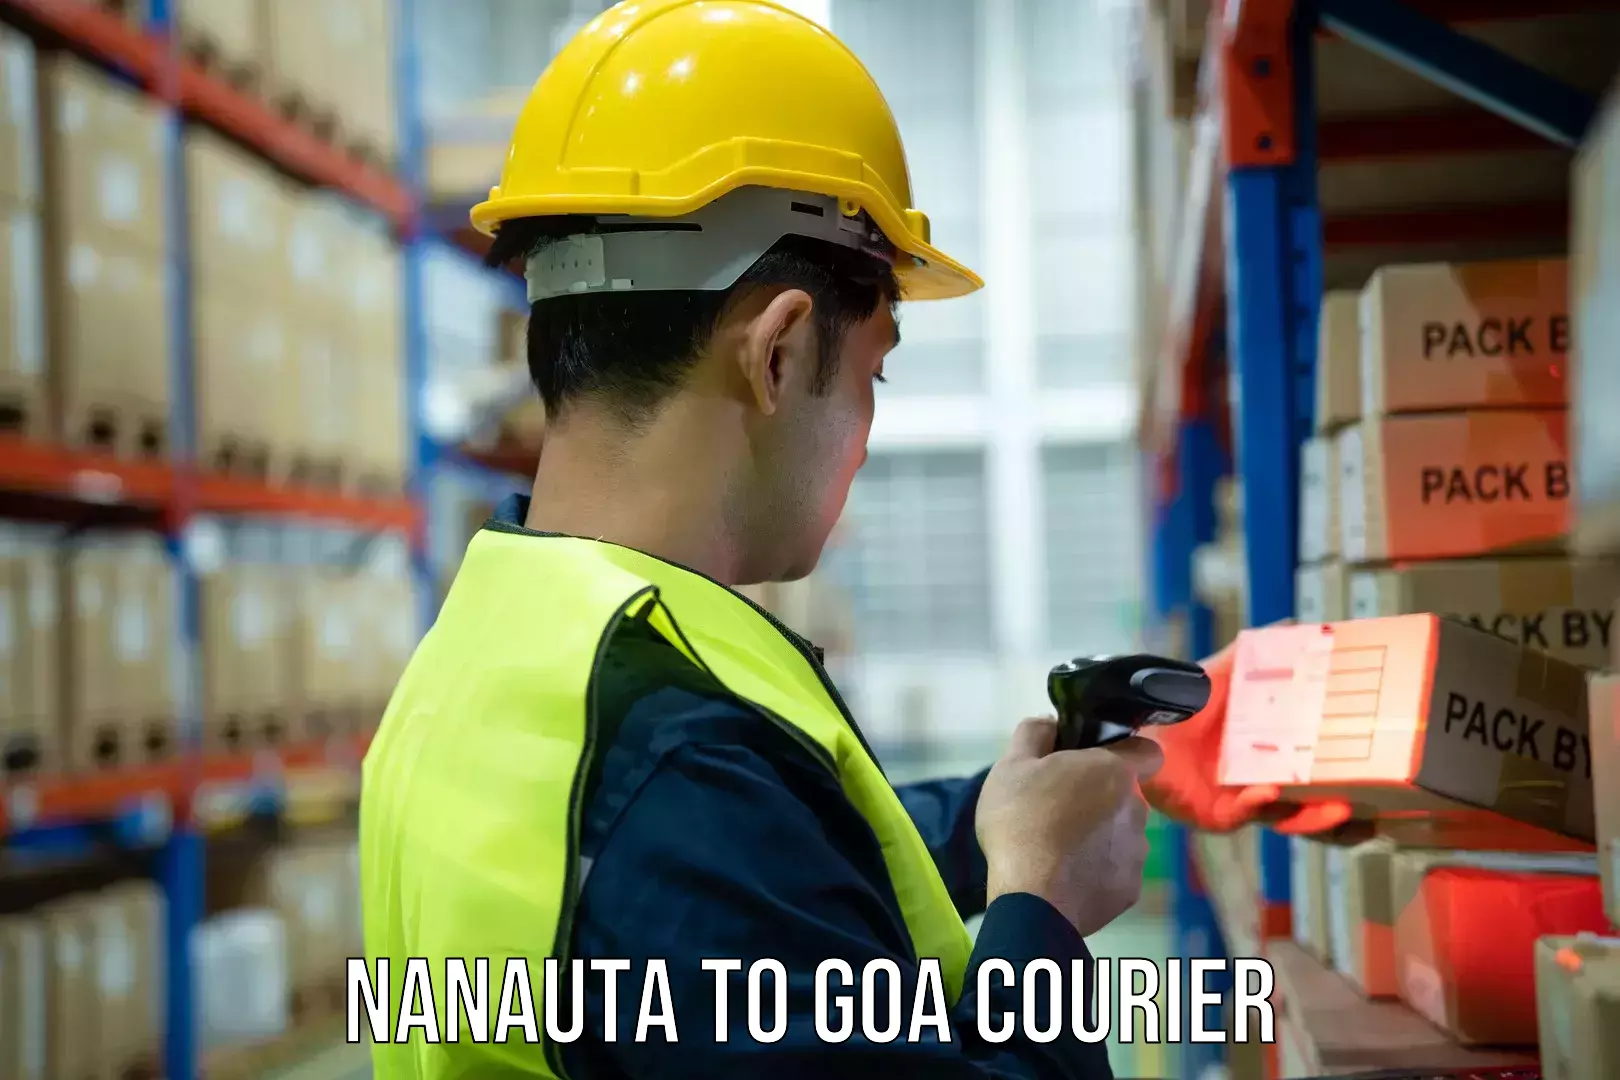 Postal and courier services Nanauta to IIT Goa